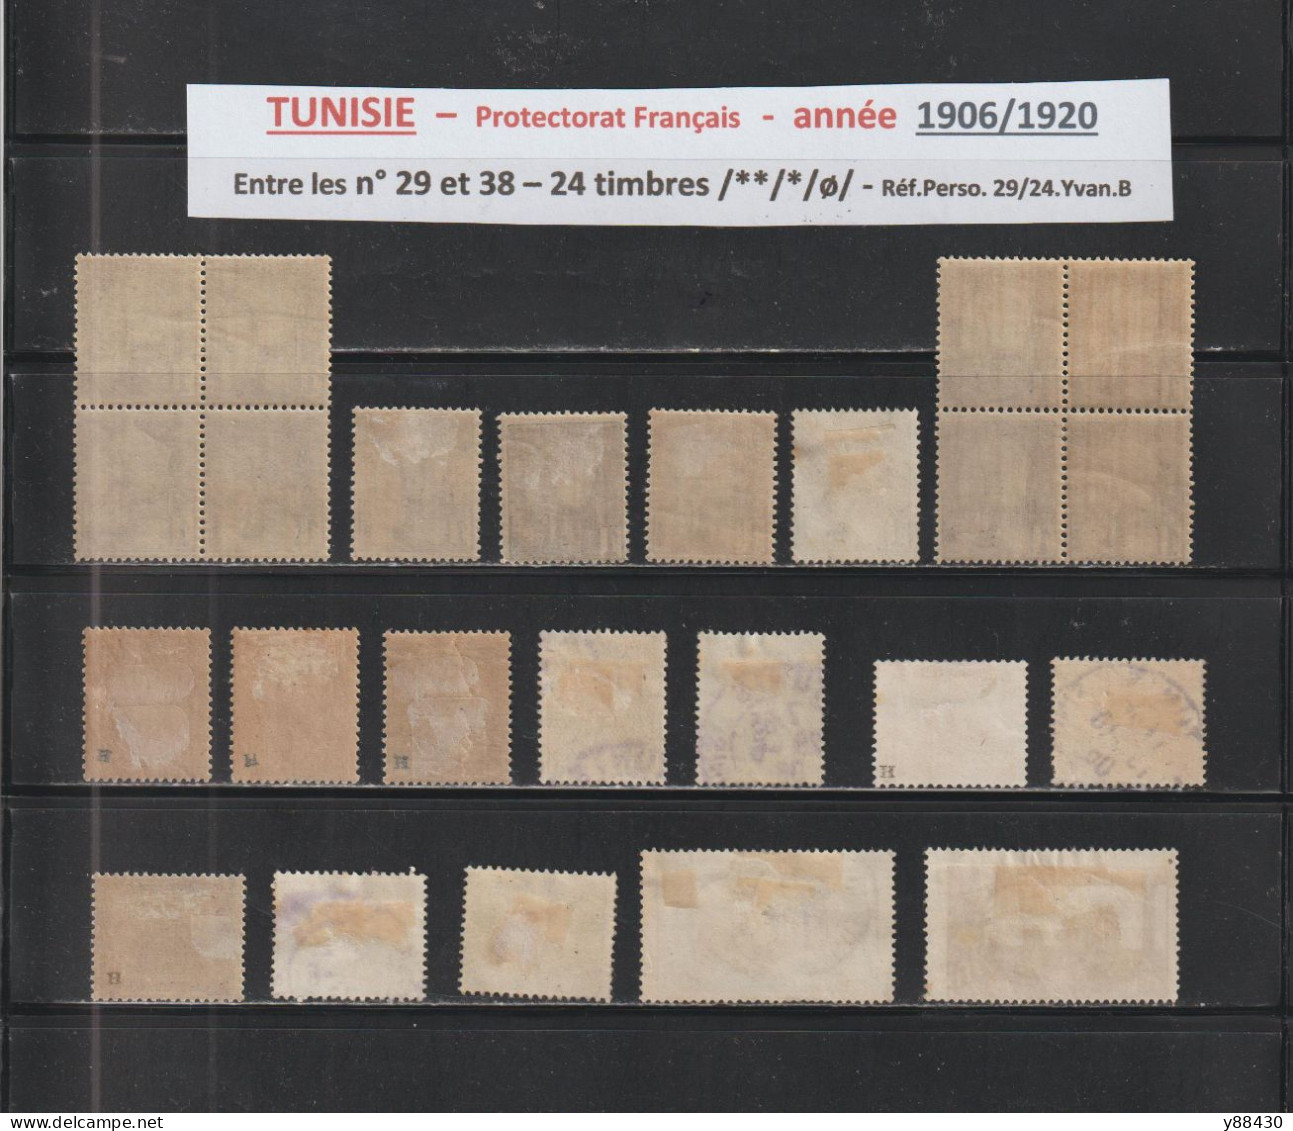 TUNISIE -  Protectorat Français - 24 Timbres Neufs Et Oblitérés  - Entre Les N° 29 Et 38 De 1906/1920 - 2 Scan - Ongebruikt